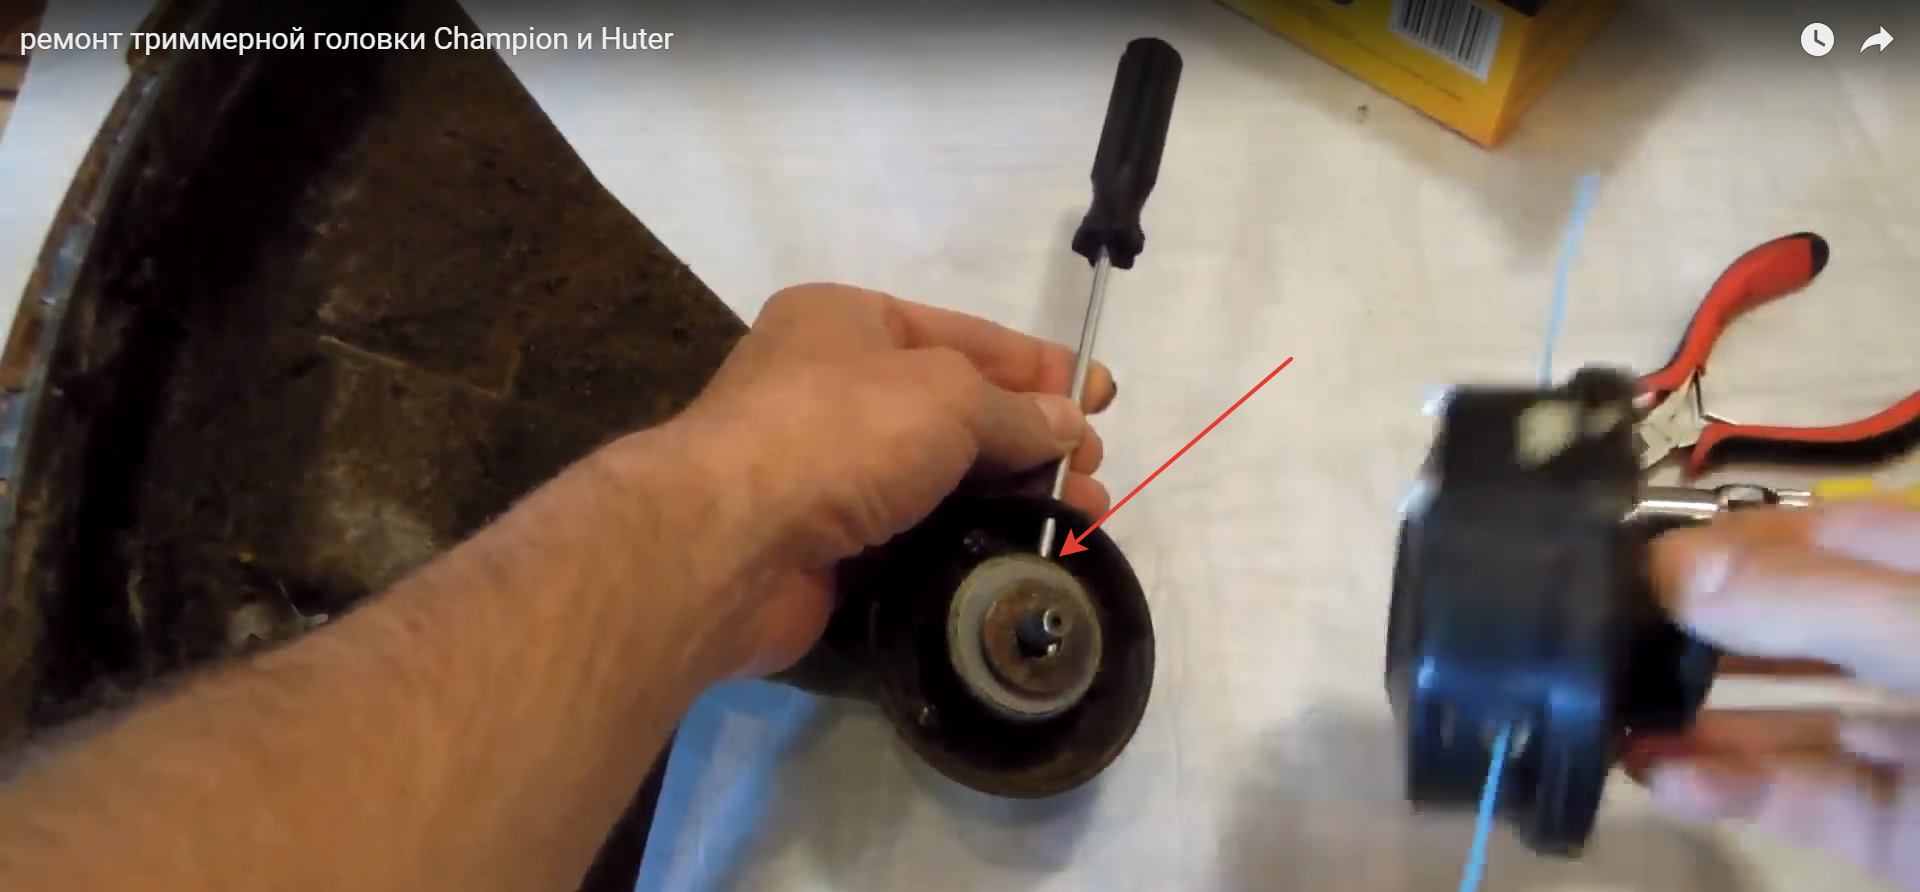 Как снять триммерную головку с электротриммера